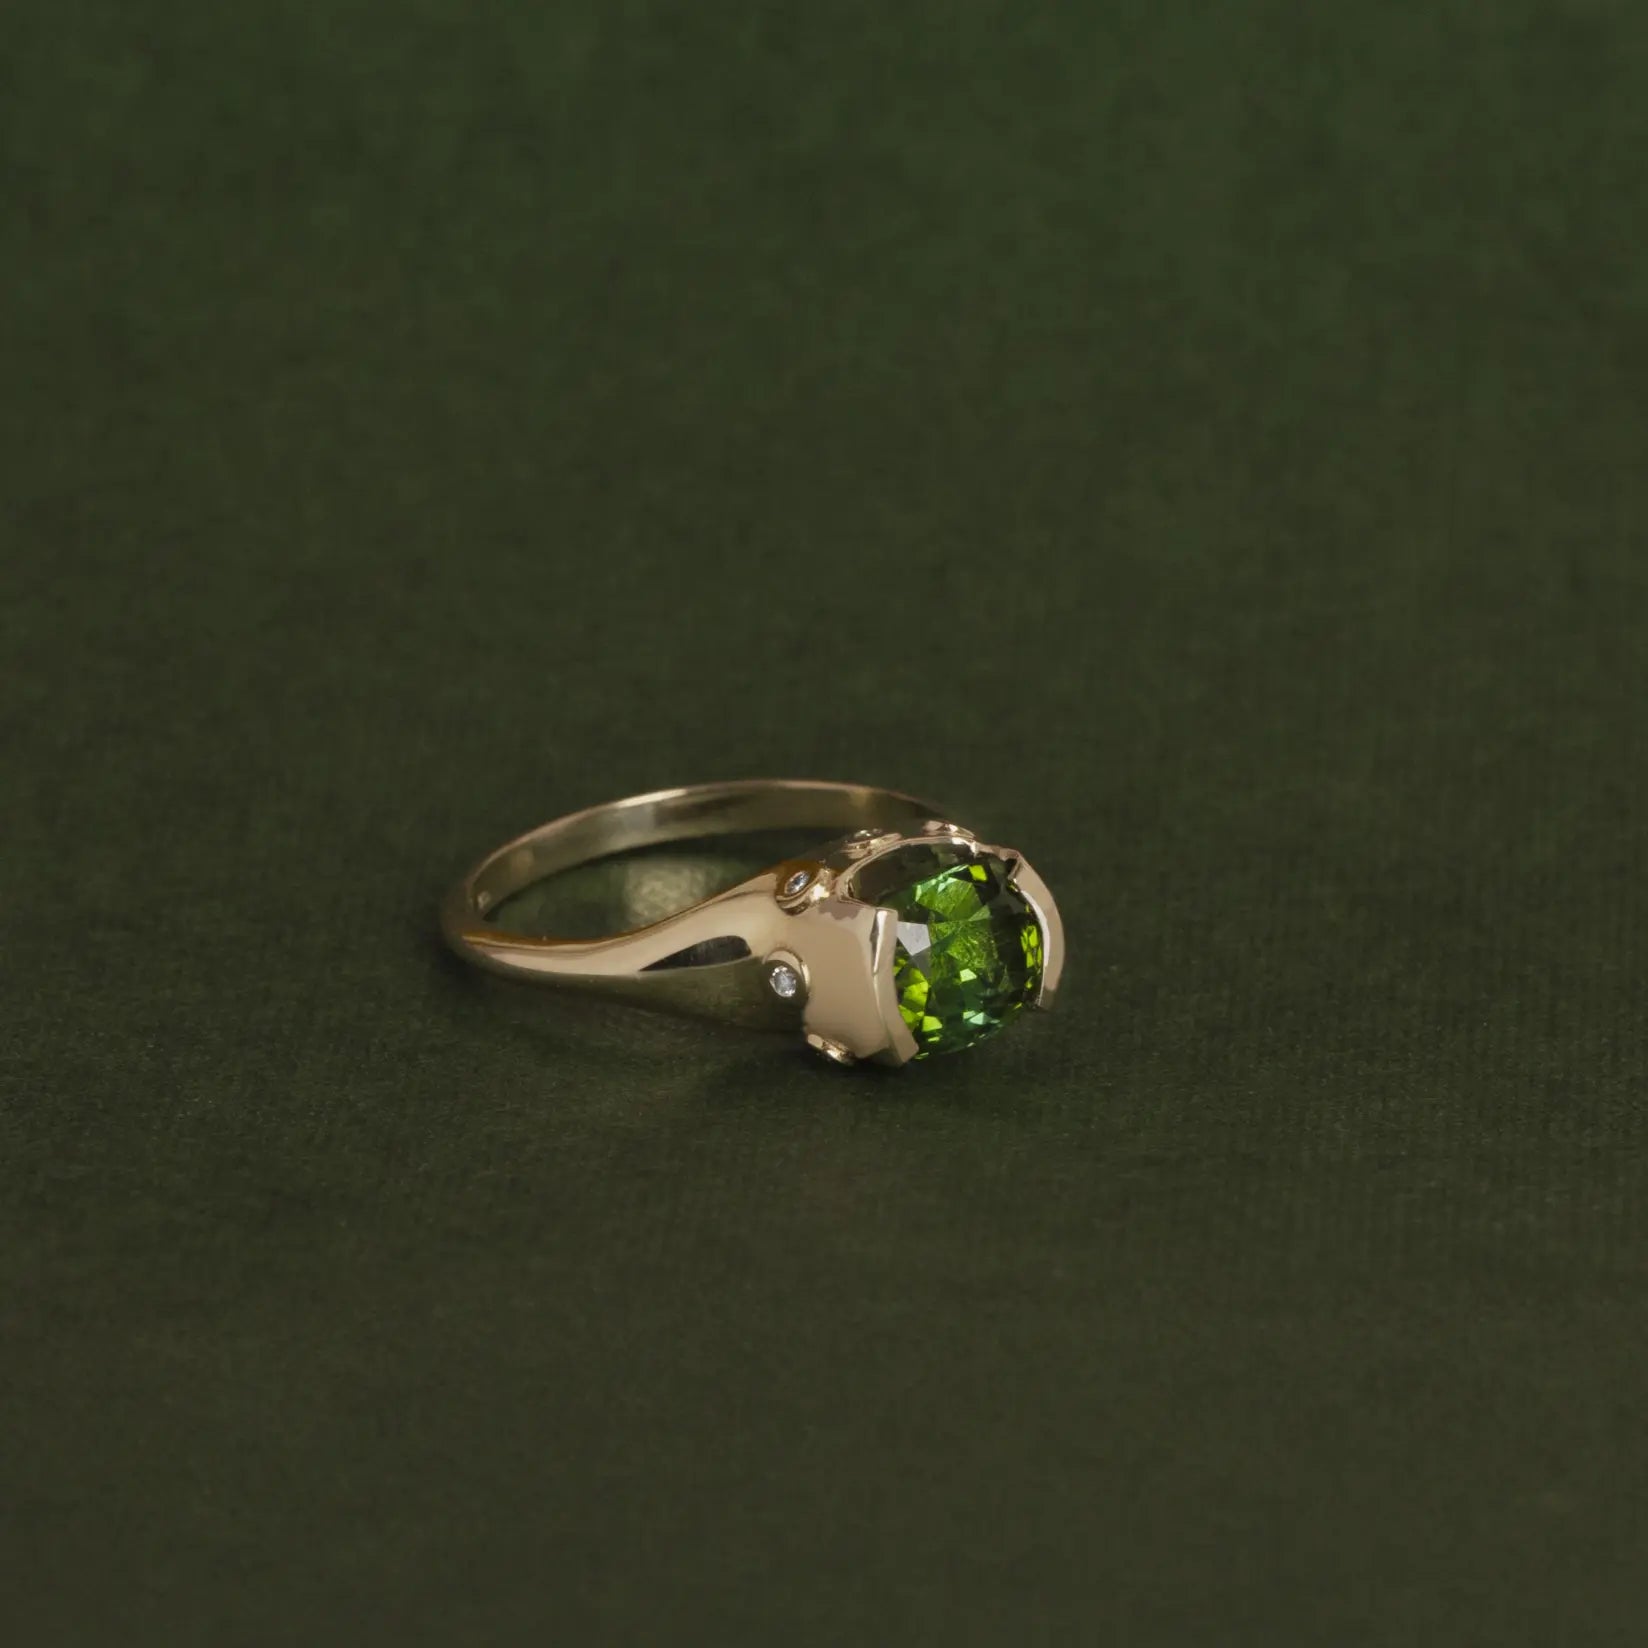 Μοναδικό Χρυσό Δαχτυλίδι Πράσινη Τουρμαλίνη Διαμάντια 18K